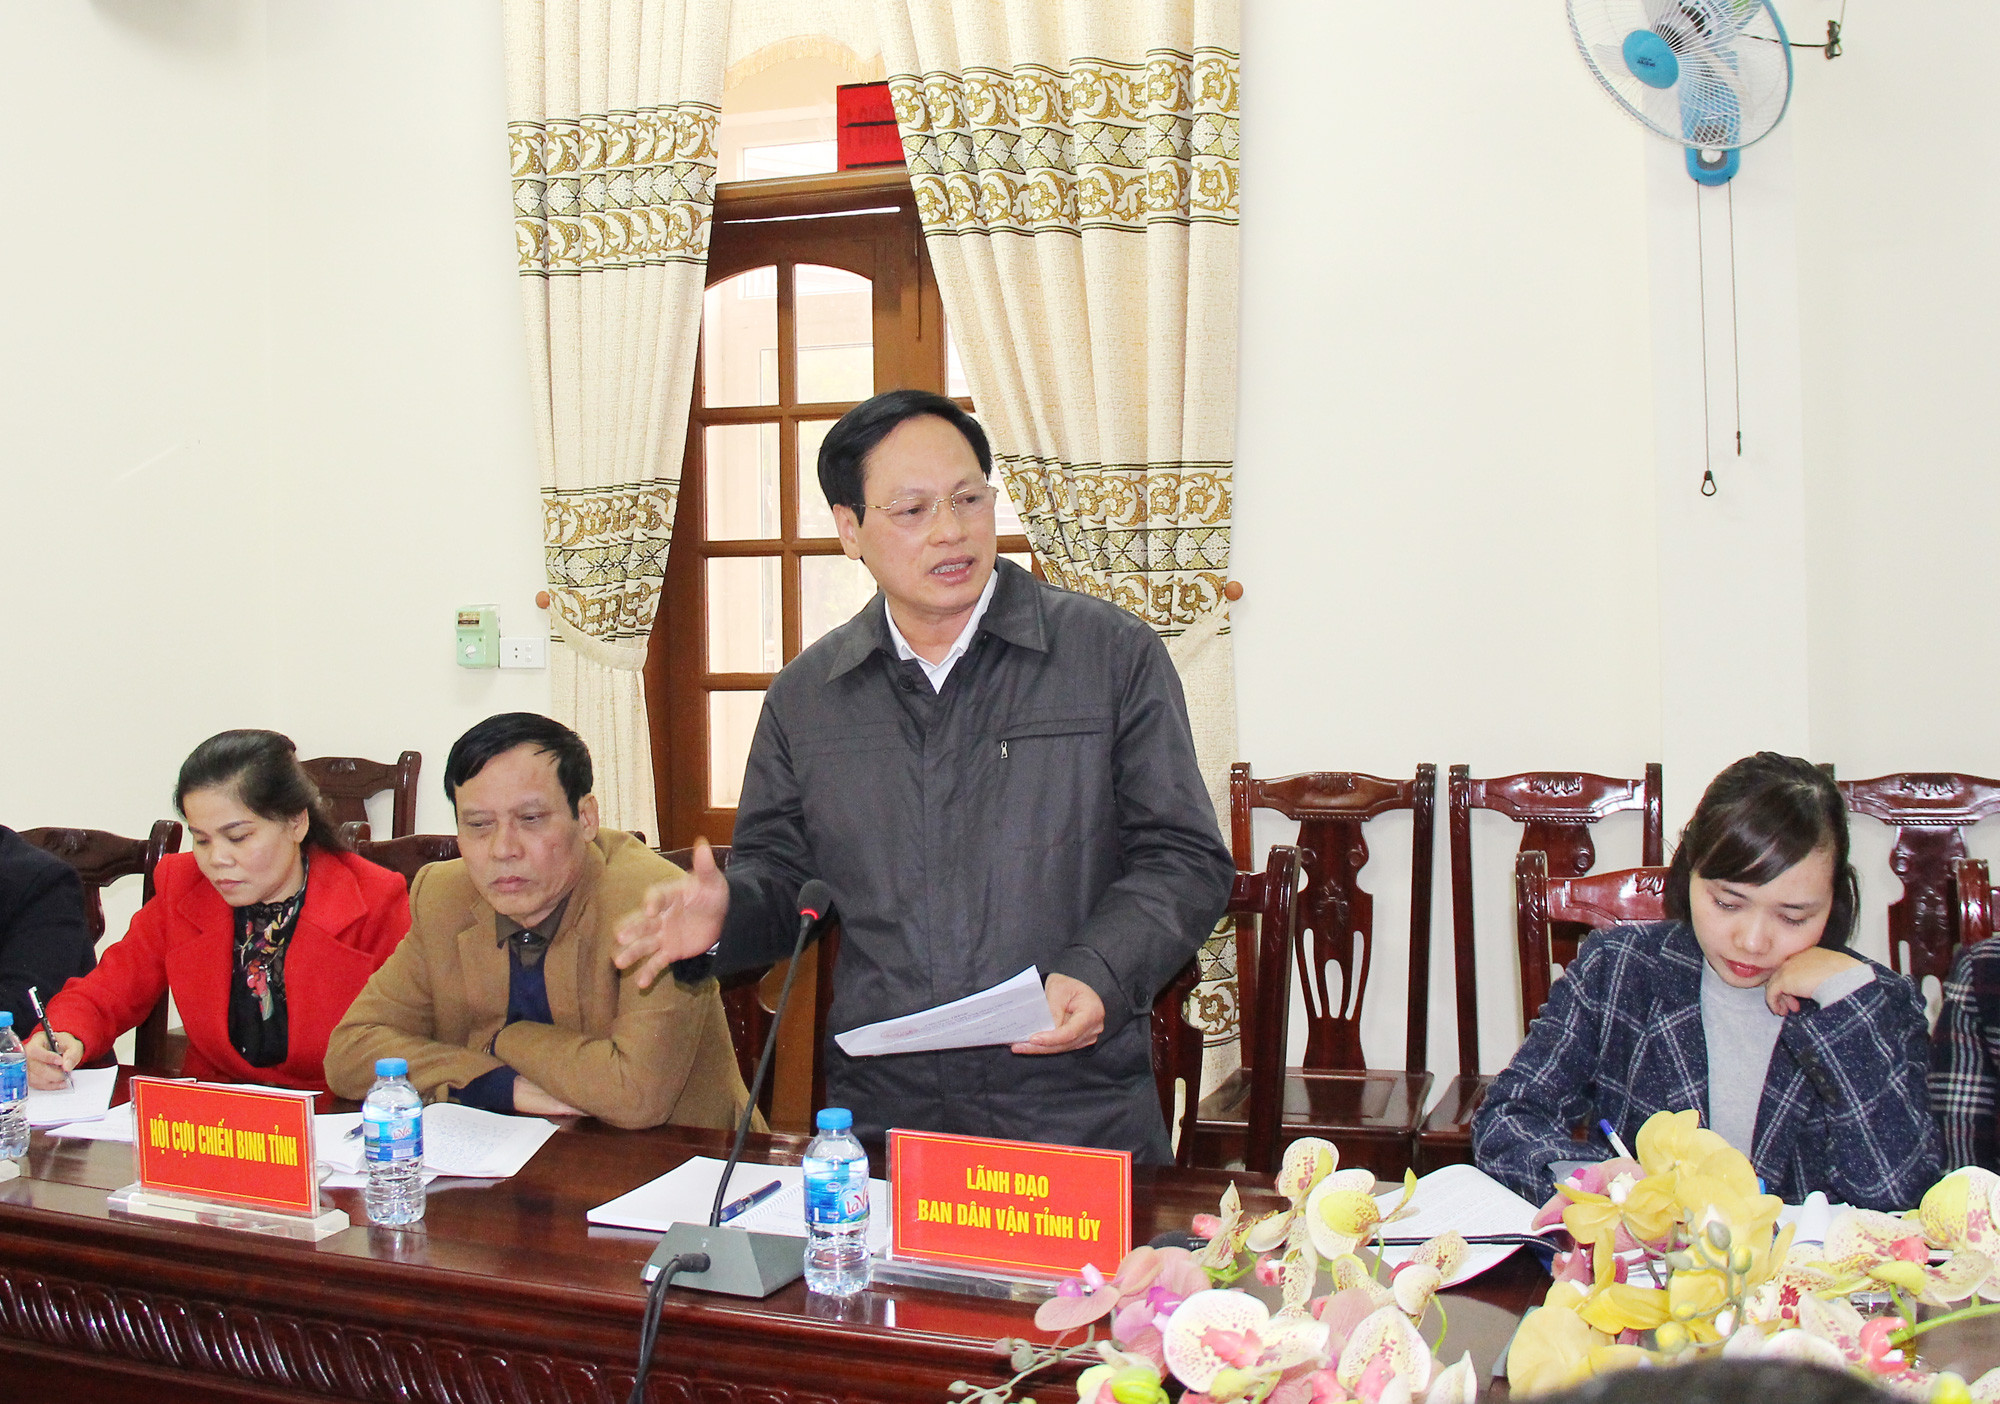 Phó trưởng ban Dân vận Tỉnh ủy Nguyễn Mạnh Khôi chia sẻ với đoàn công tác nhiều kinh nghiệm quý của Nghệ An trong viêc xây dựng, tập hợp khối đại đoàn kết toàn dân tộc. Ảnh: Mai Hoa